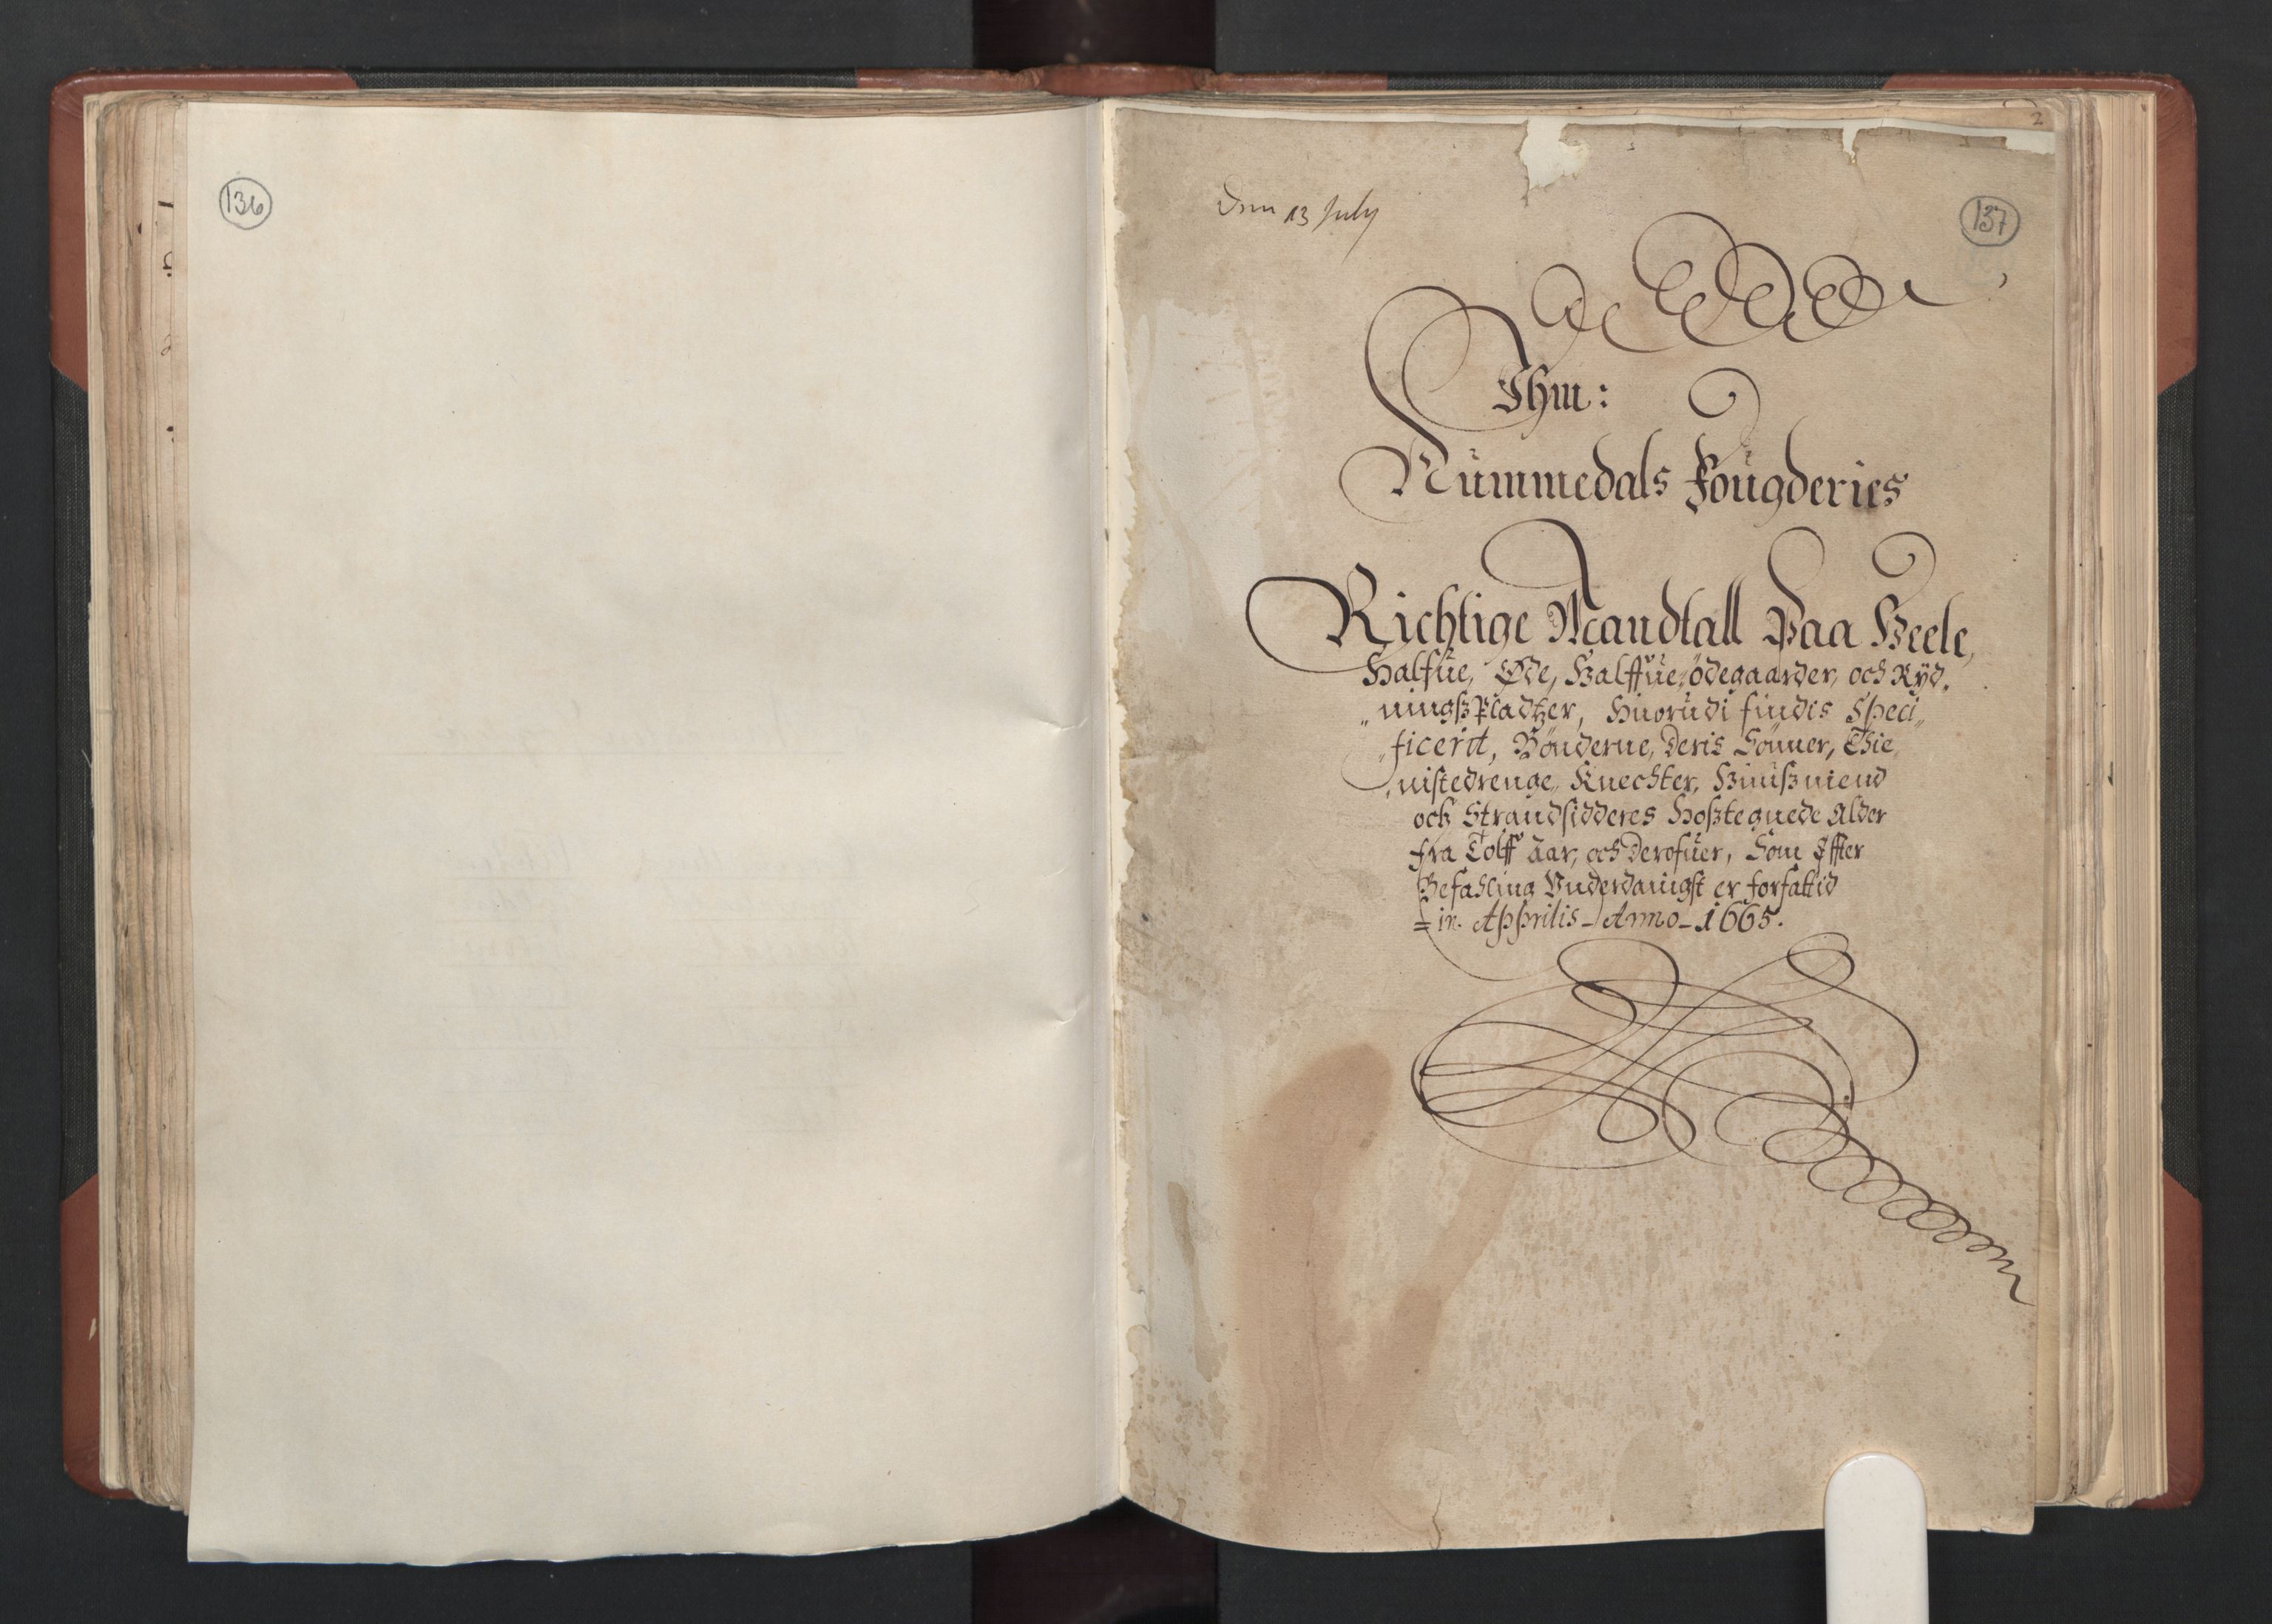 RA, Fogdenes og sorenskrivernes manntall 1664-1666, nr. 19: Fosen fogderi, Inderøy fogderi, Selbu fogderi, Namdal fogderi og Stjørdal fogderi, 1664-1665, s. 136-137